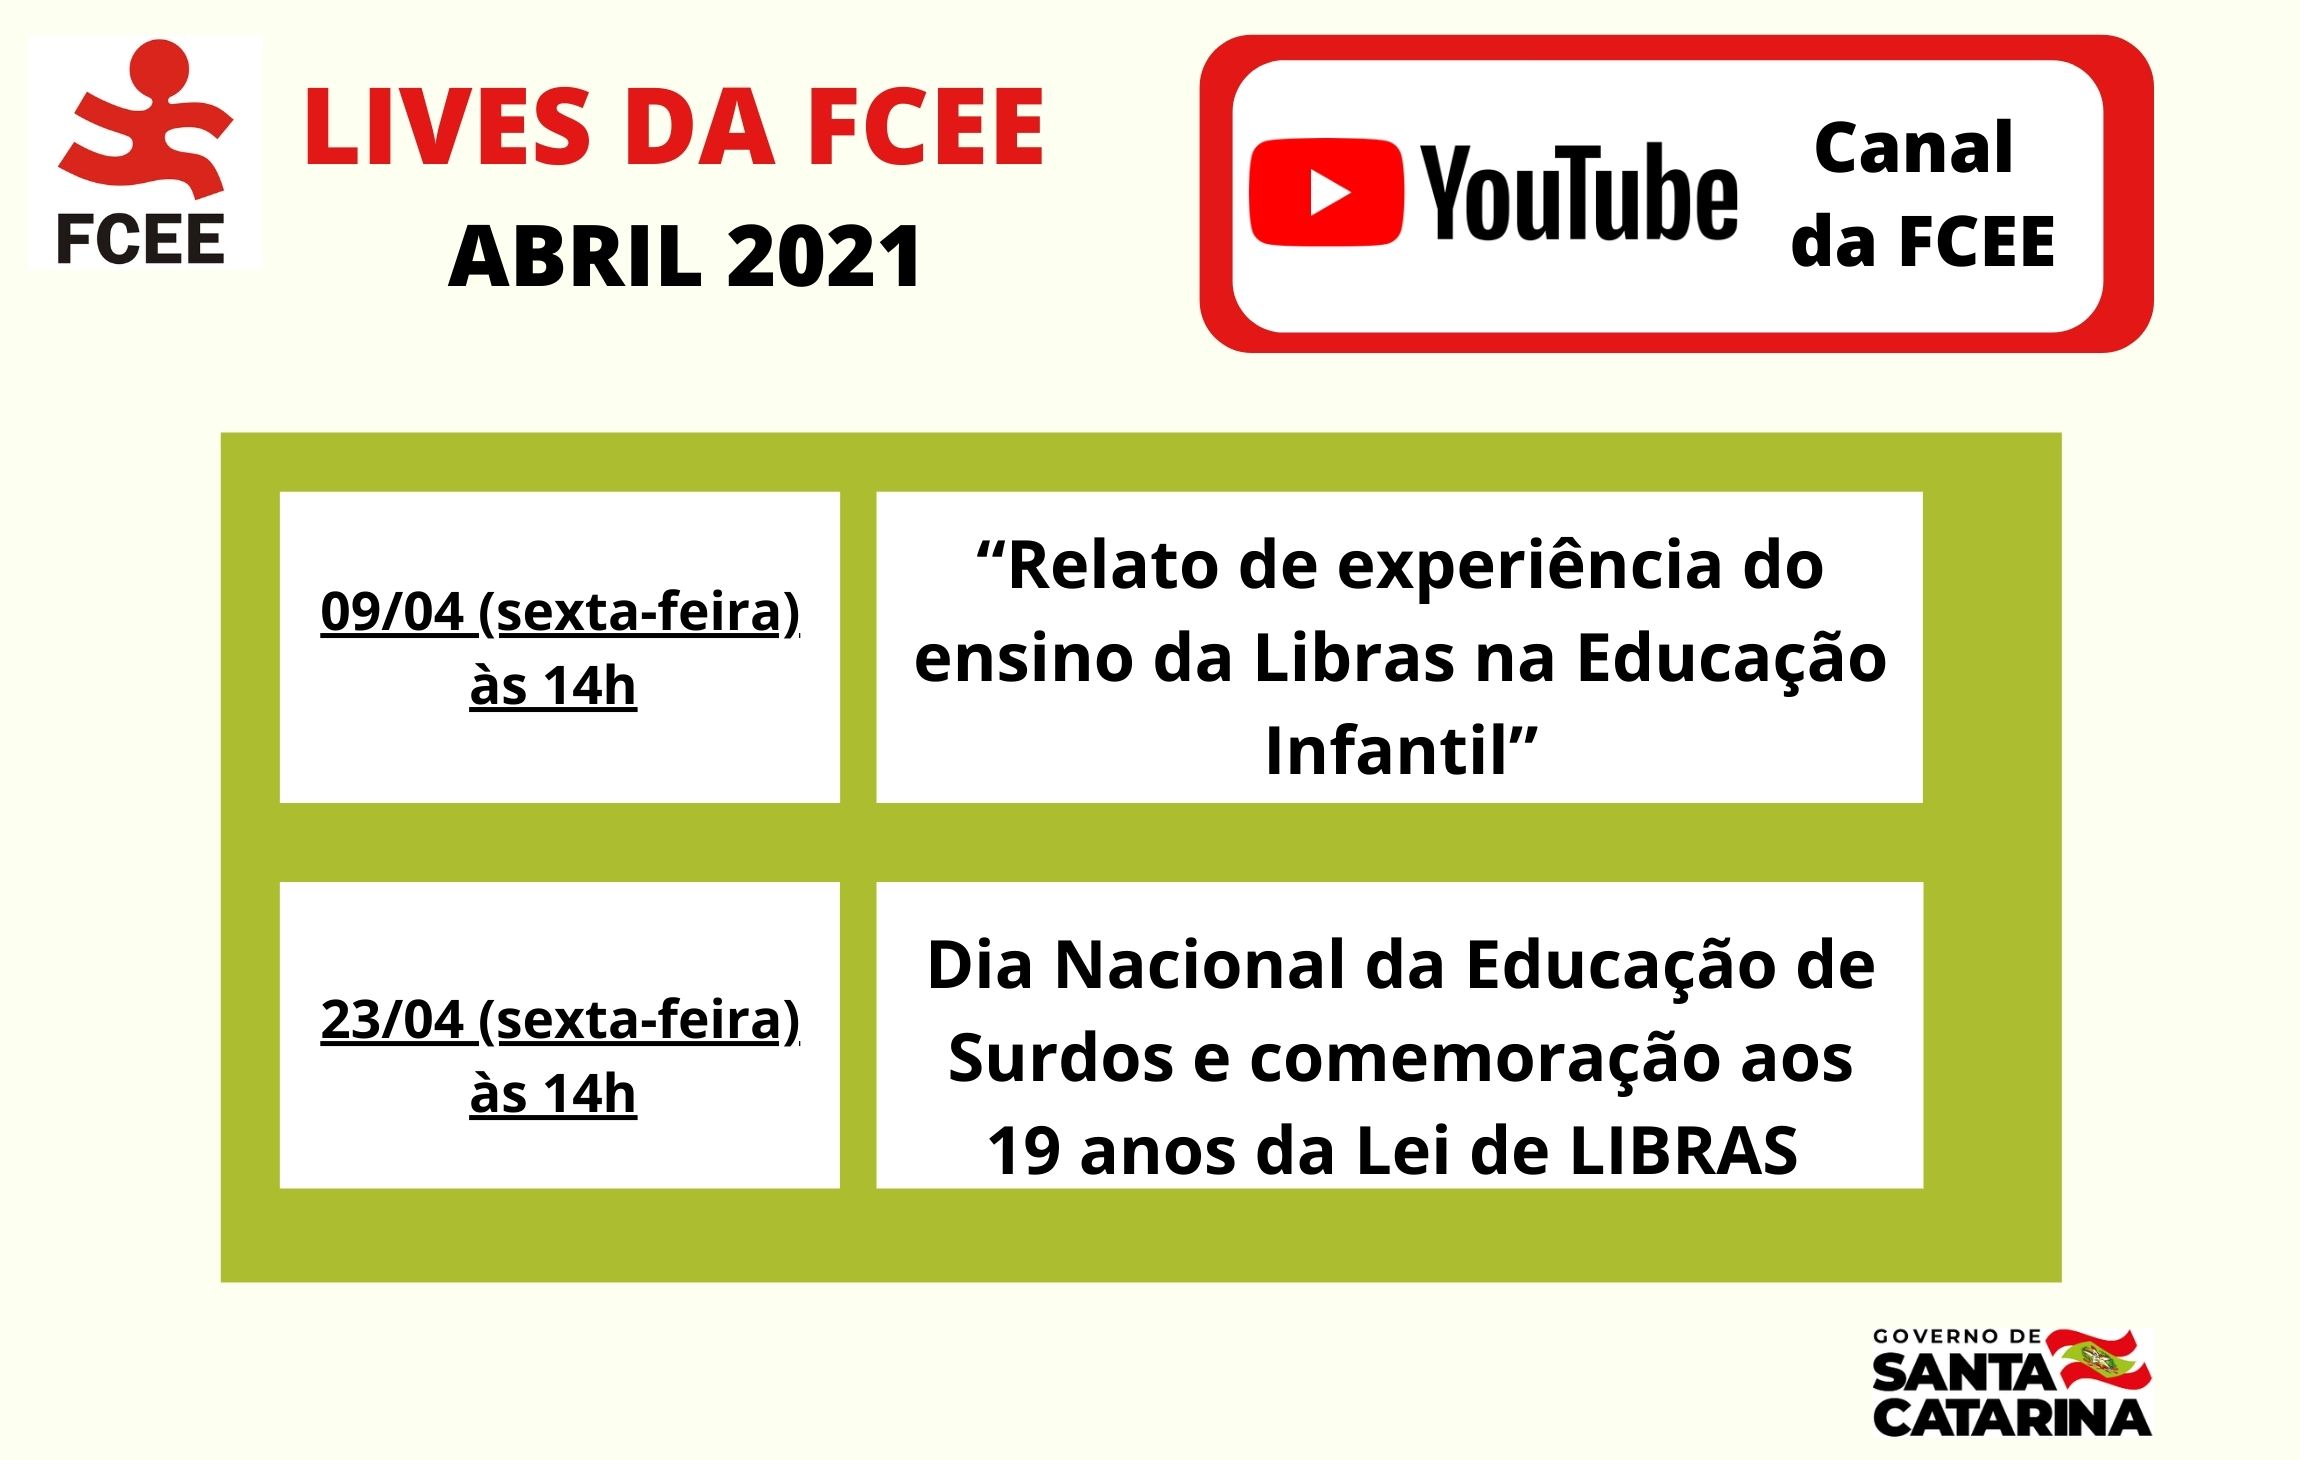 Lives da FCEE abril 2021 – Canal da FCEE YouTube – 09/04 (sexta-feira) 14h - “Relato de experiência do ensino da Libras na Educação Infantil” 23/04 (sexta-feira) 14h - “Dia Nacional da Educação de Surdos e comemoração aos 19 anos da Lei de LIBRAS”